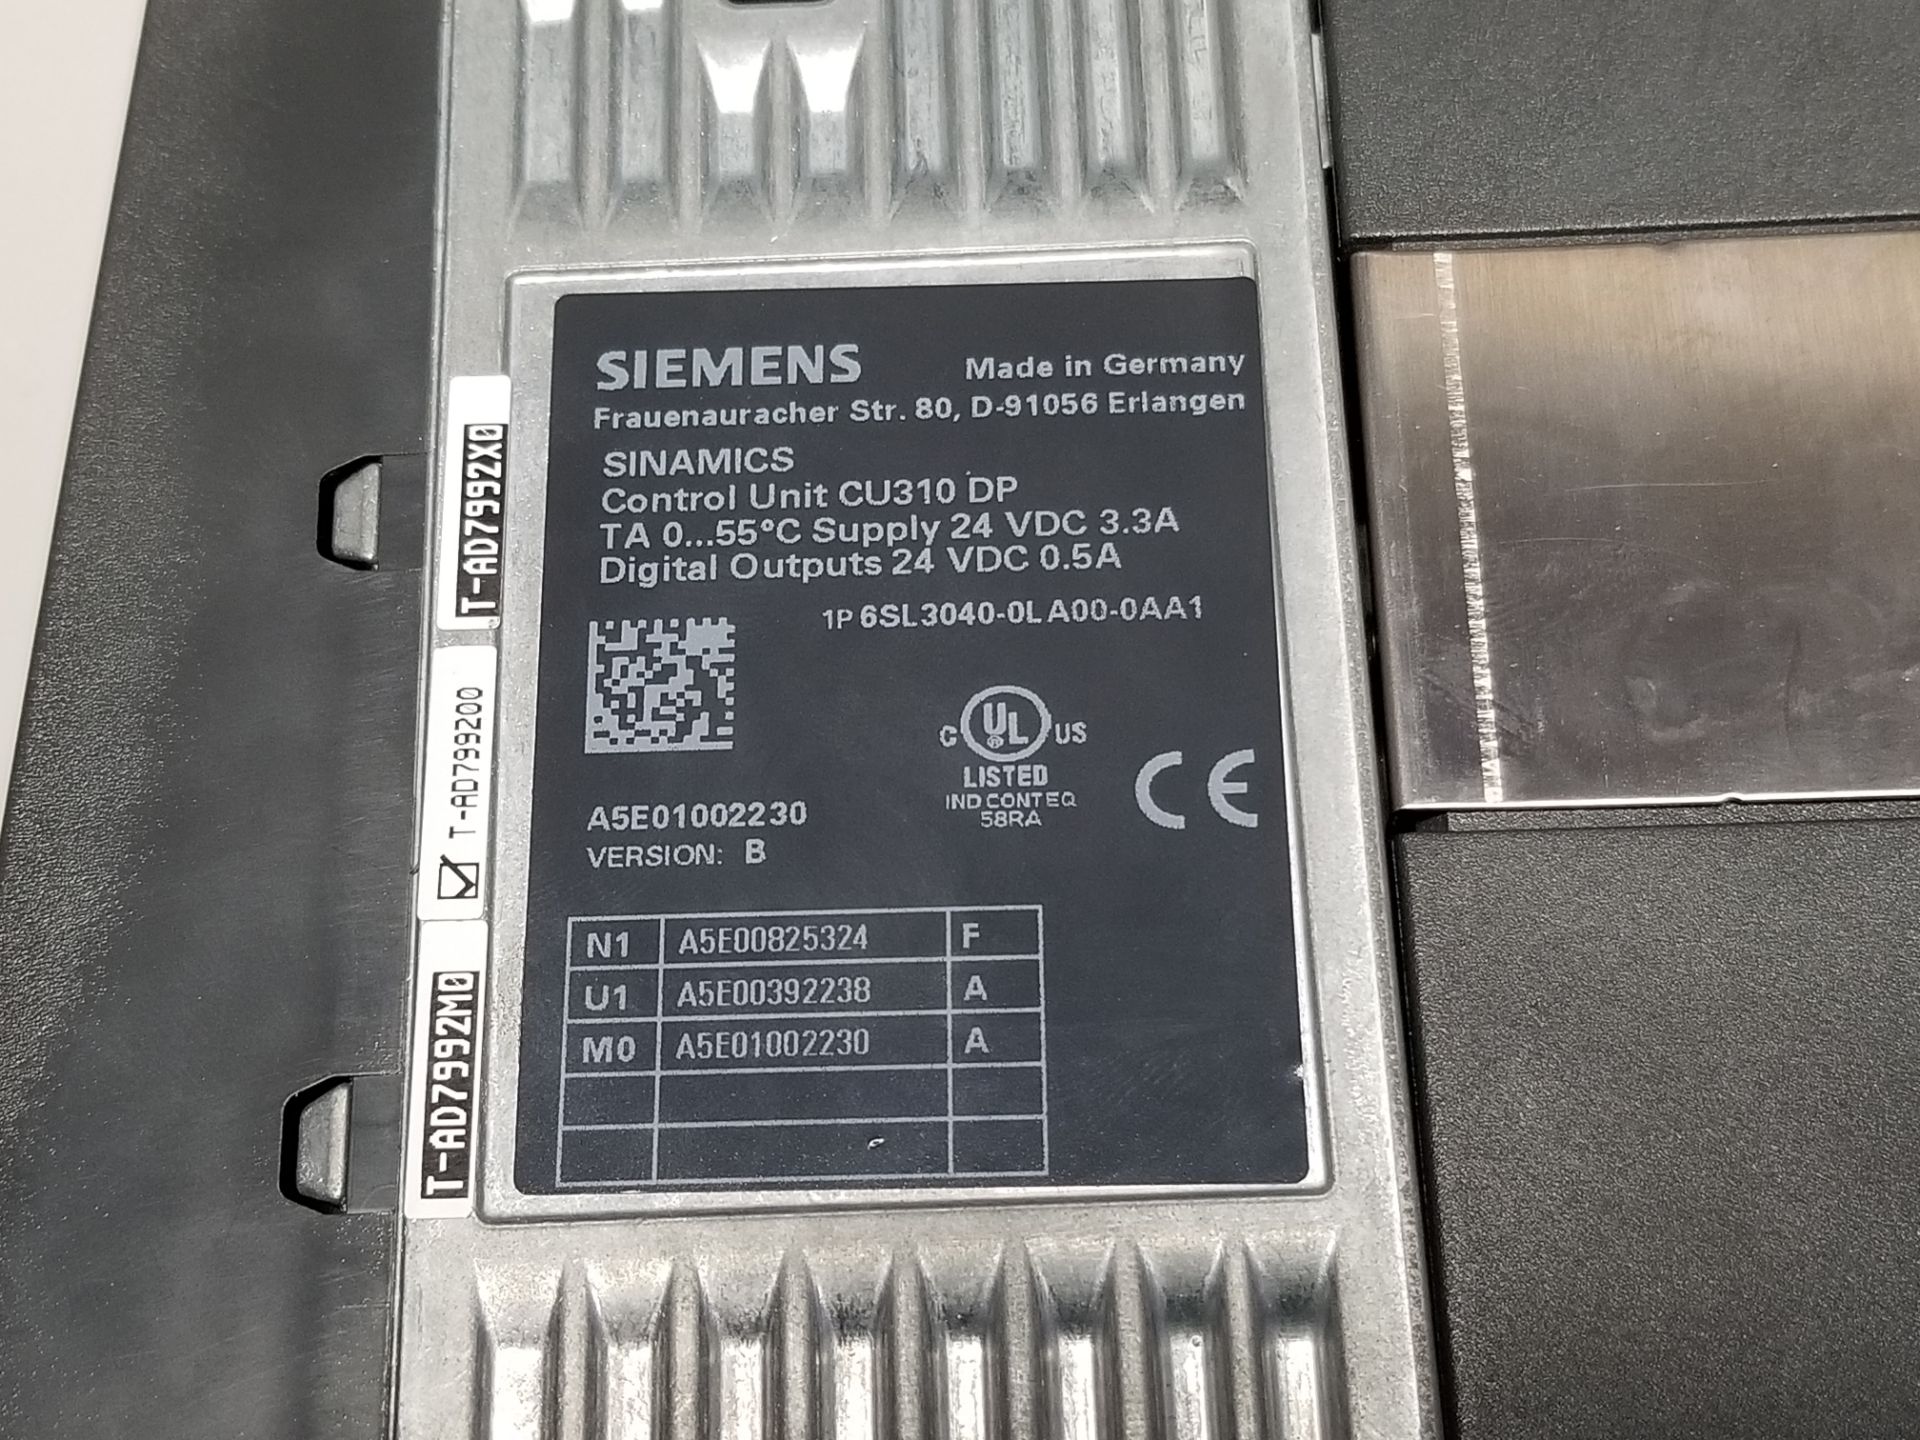 Siemens Sinamics Control Unit PLC Module W/Power Module - Image 5 of 7